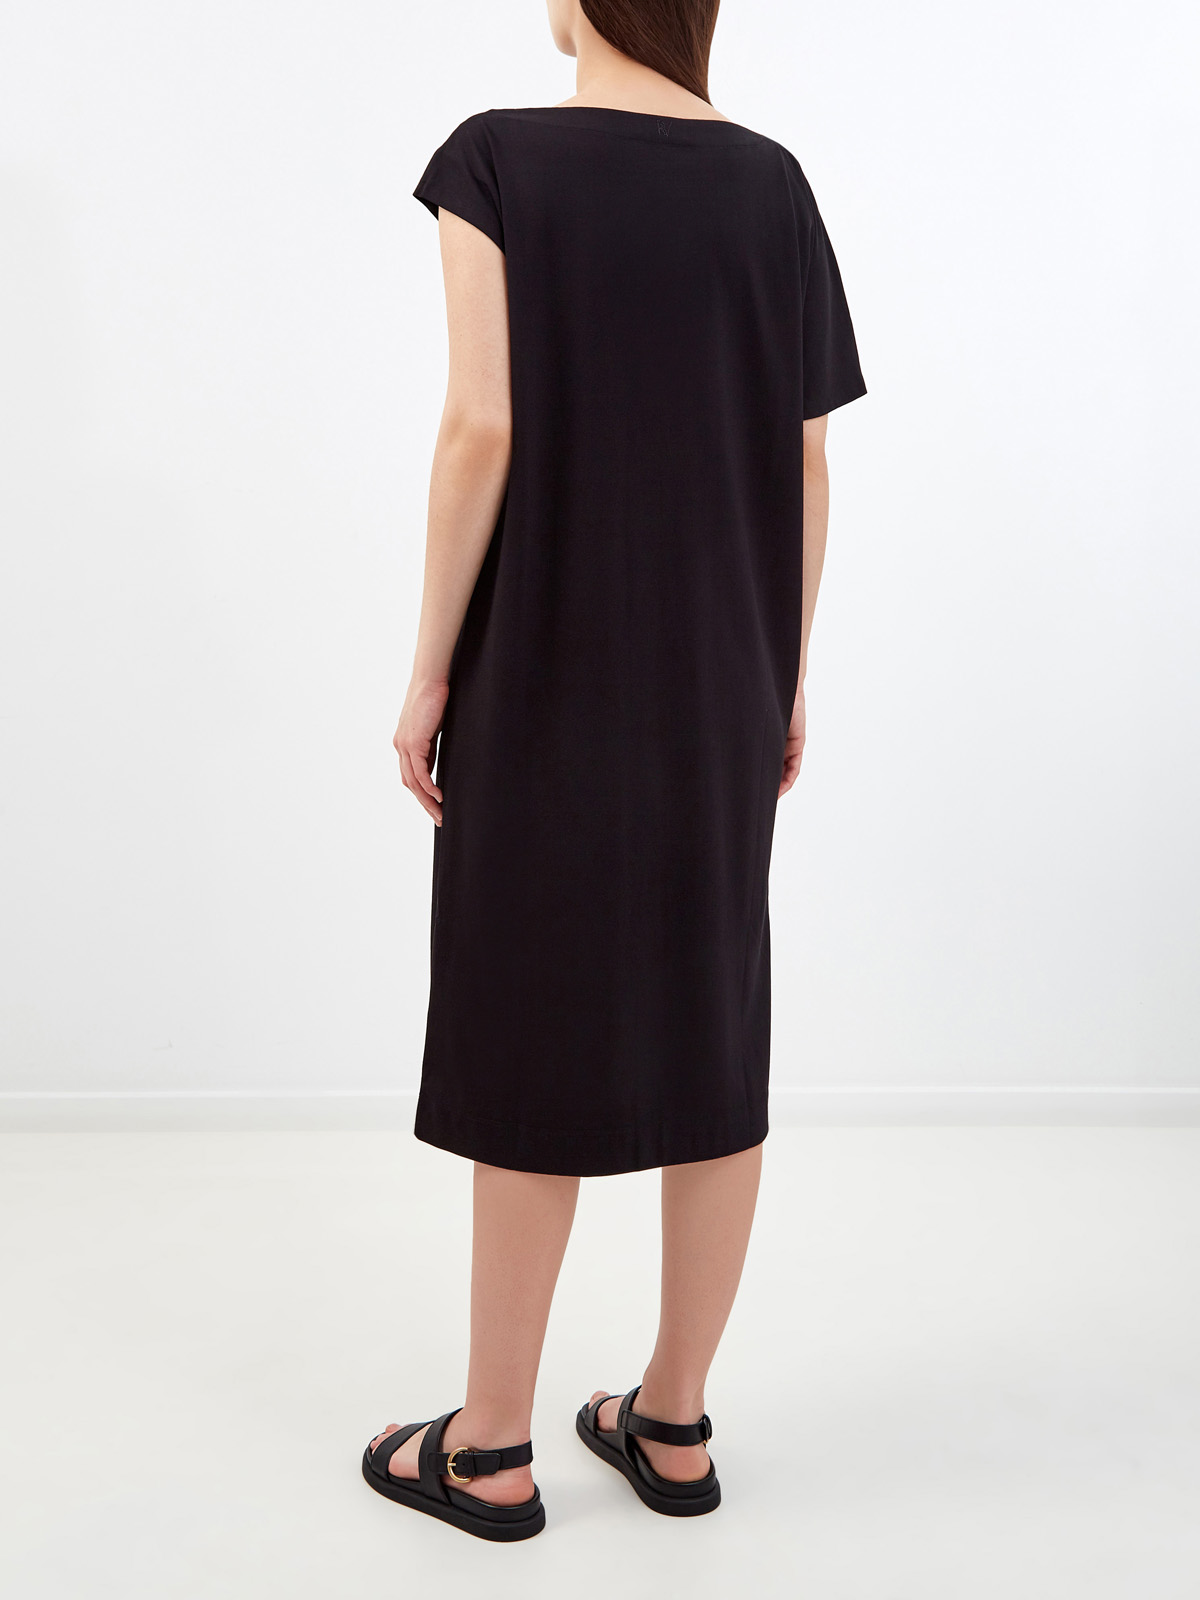 Хлопковое платье в расслабленном стиле с асимметричными рукавами RE VERA, цвет черный, размер M;L;XL;2XL;3XL;S - фото 4